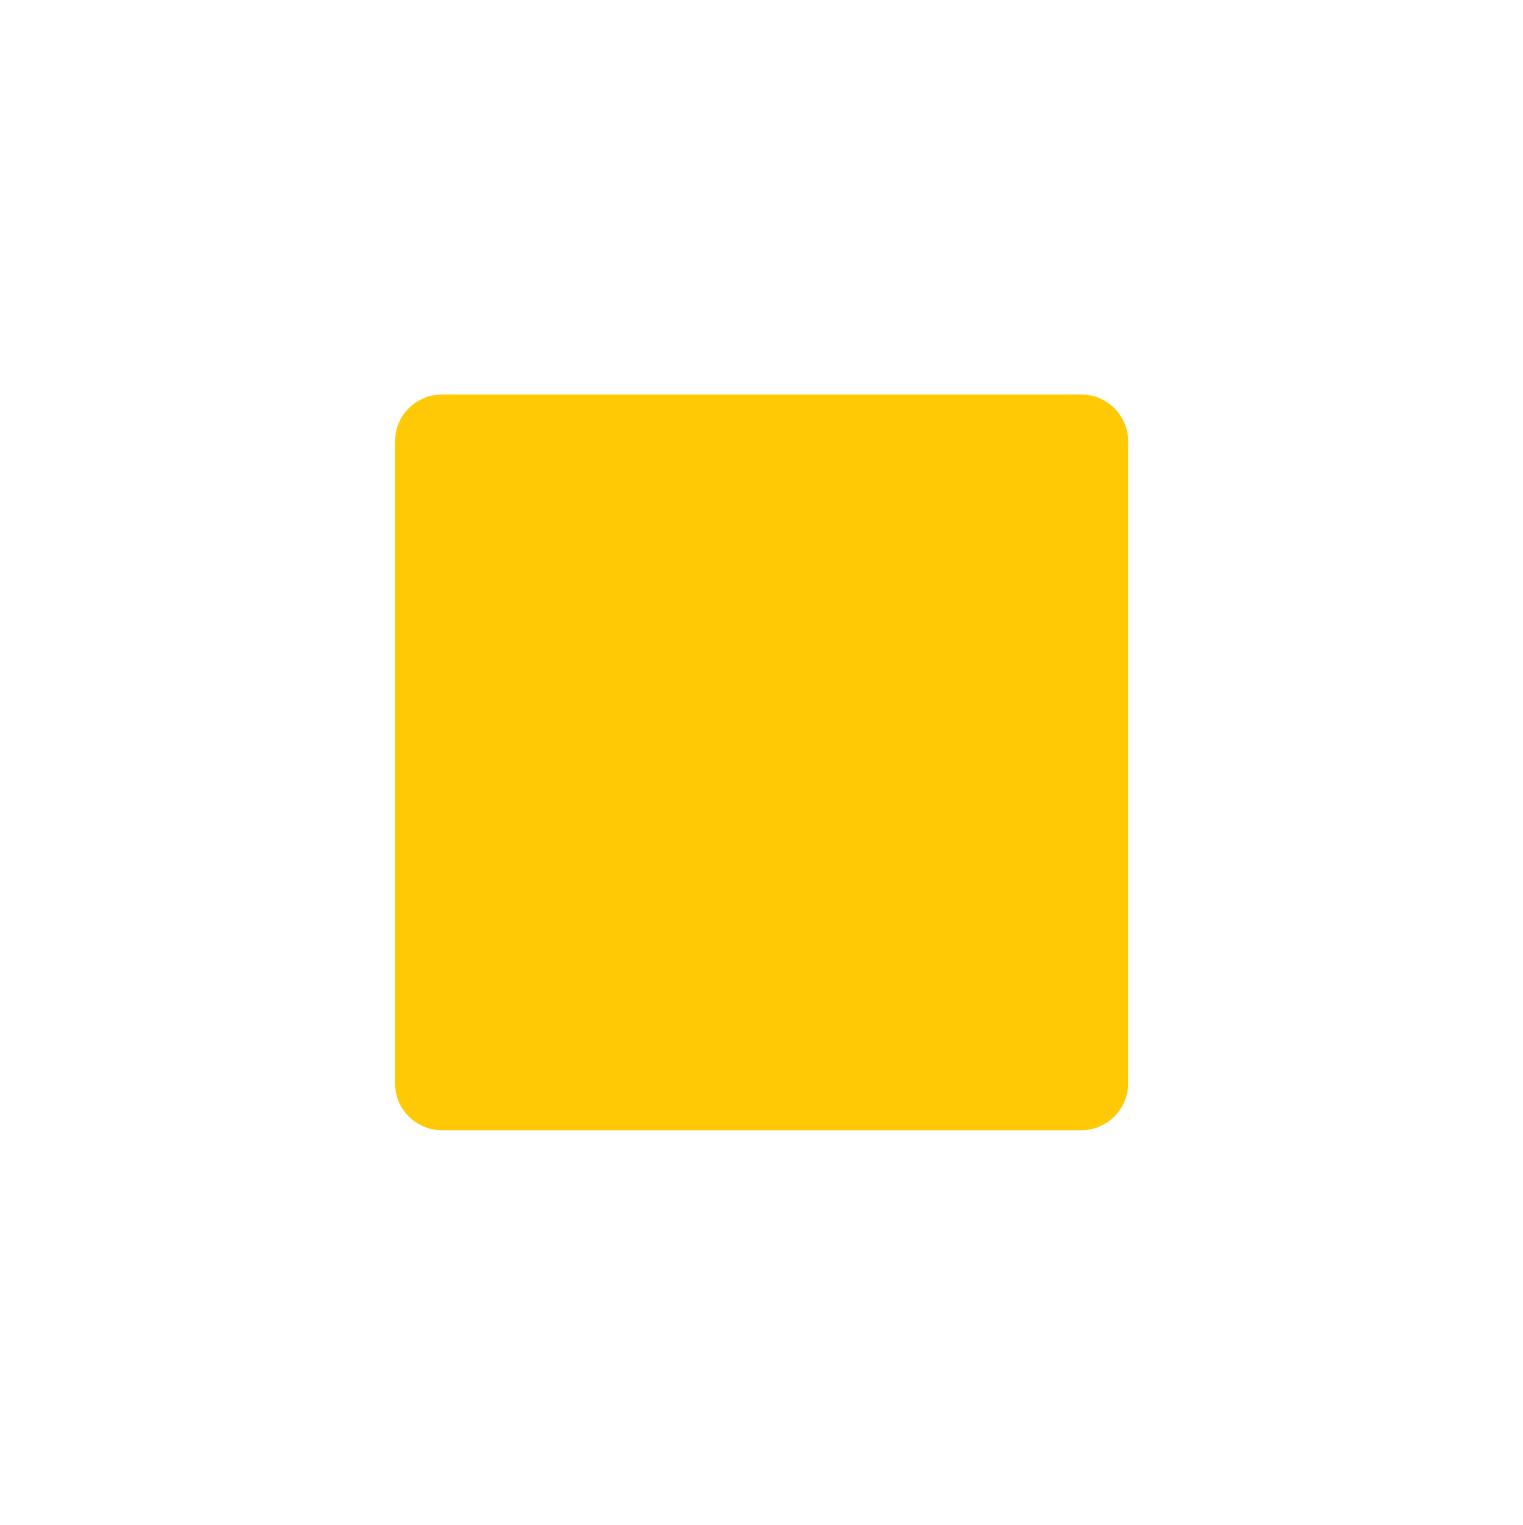 Life Storage logo pour fonds sombres (PNG transparent)